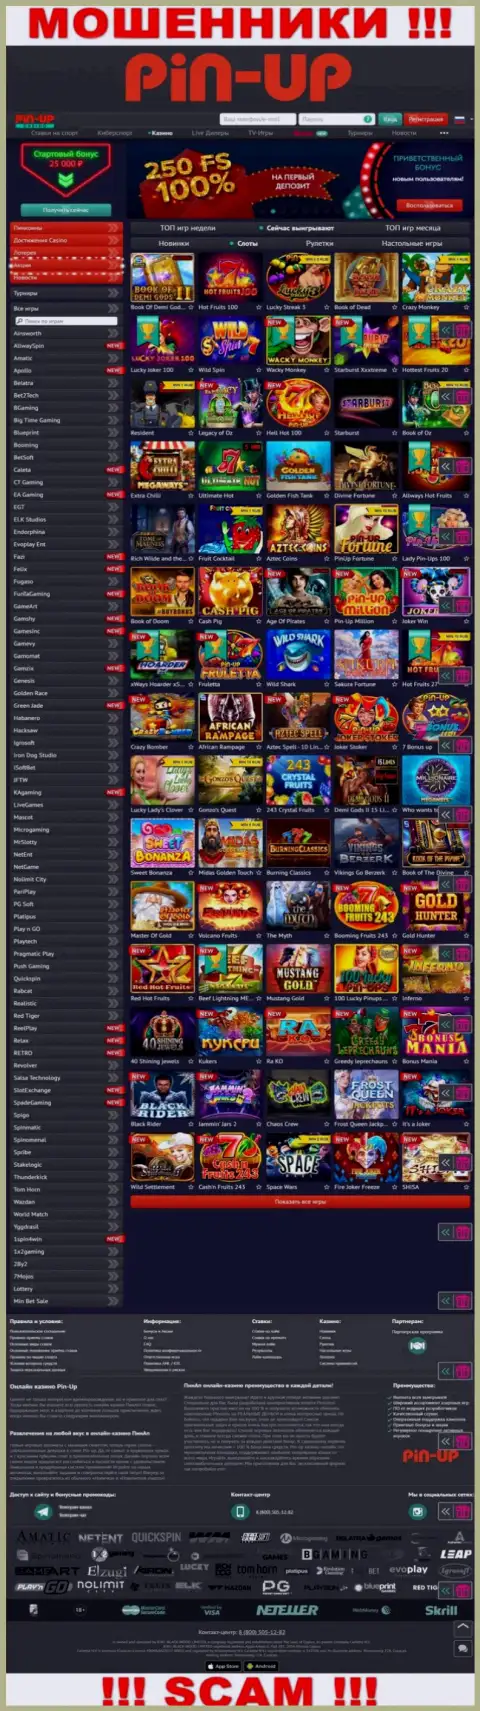 Pin-Up Casino - это официальный информационный портал интернет воров Пин-Ап Казино